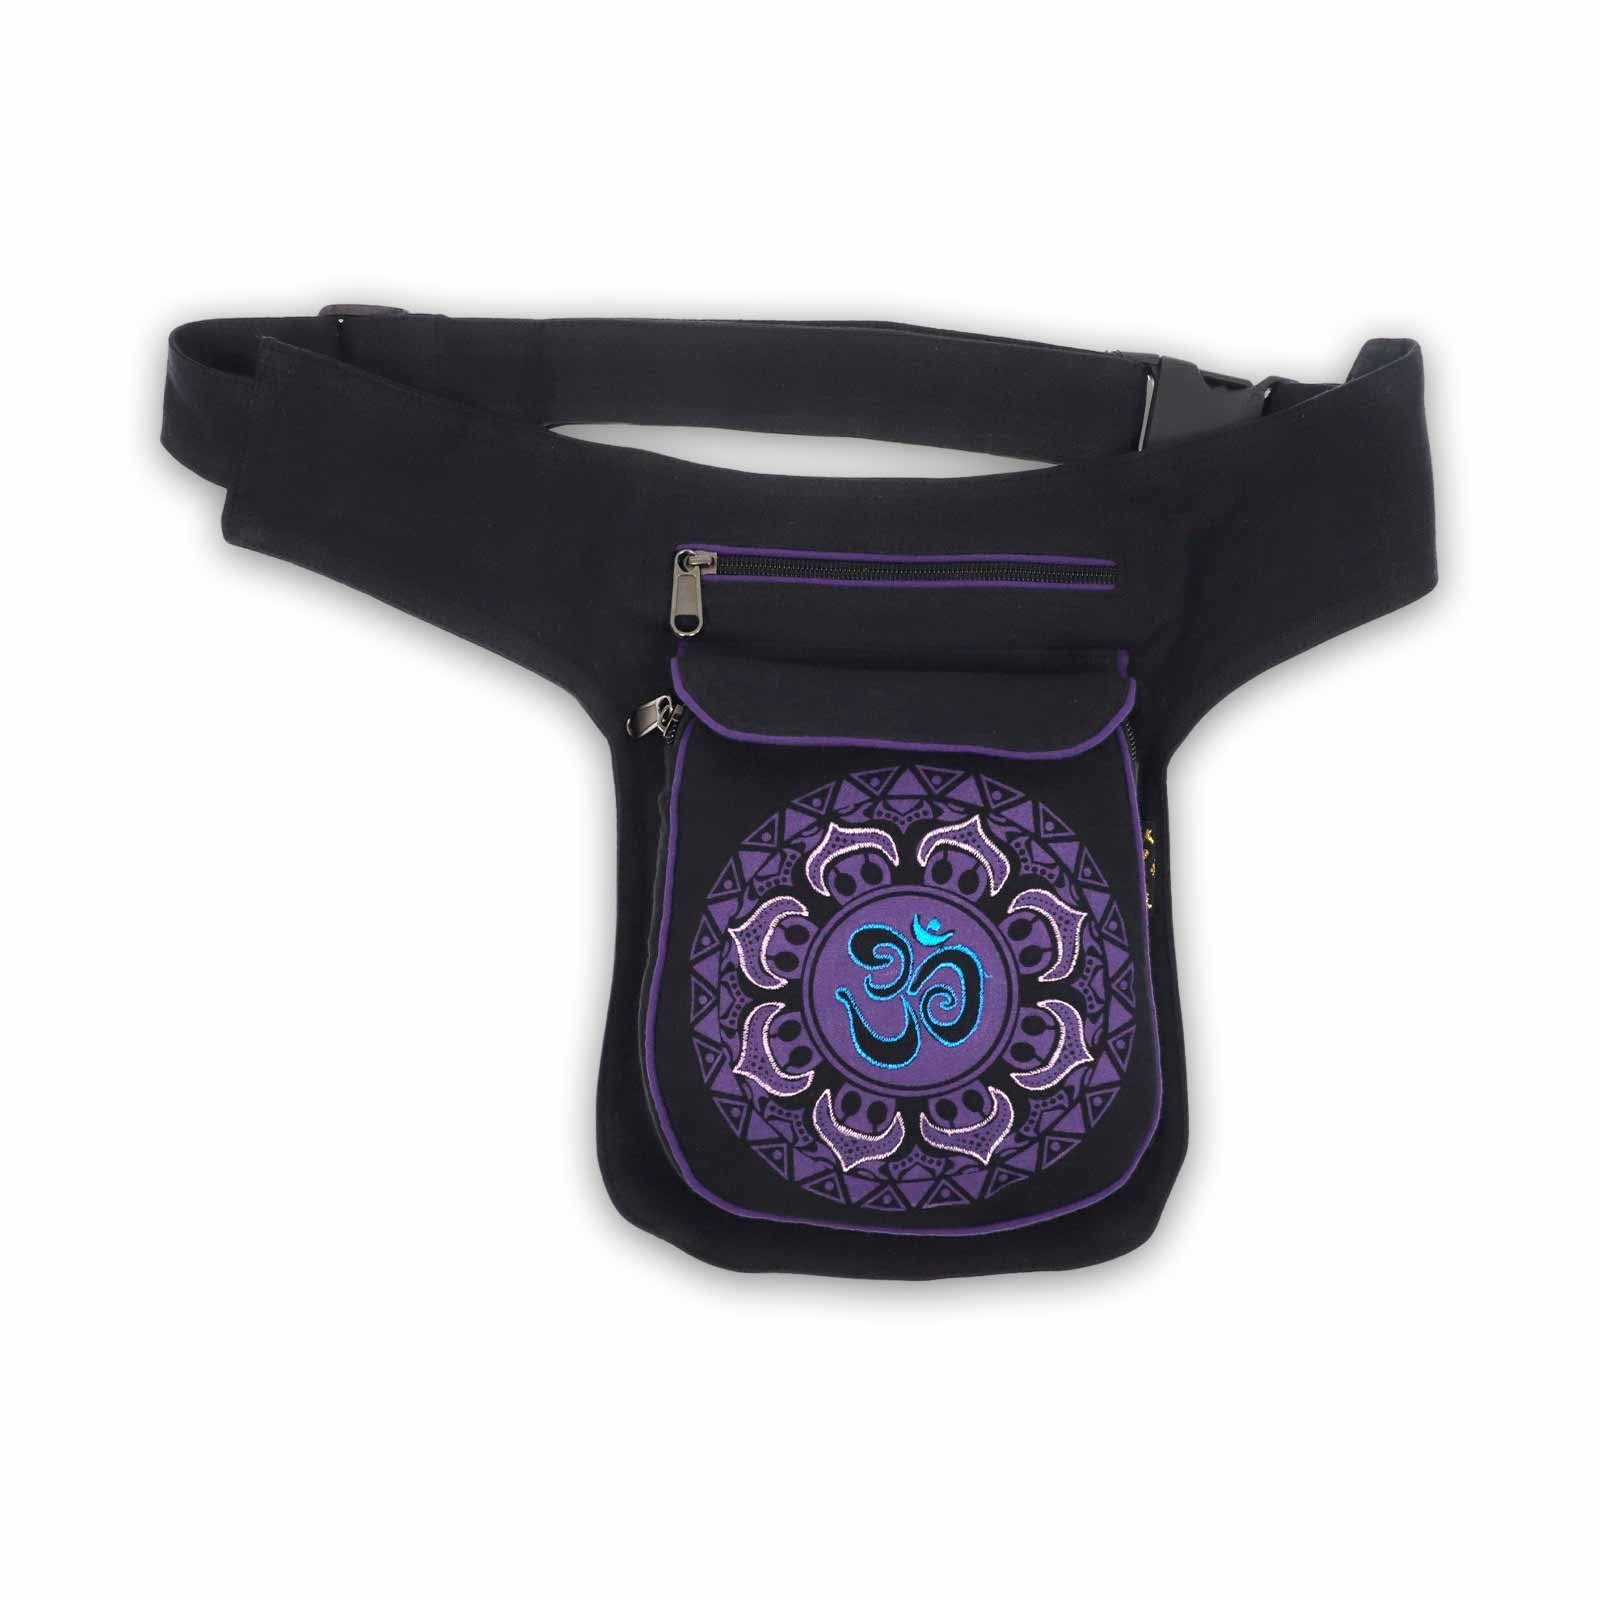 KUNST UND MAGIE Bauchtasche OM Mandala Hüfttasche Bauchtasche Black Sidebag Purple Gürteltasche Mandala